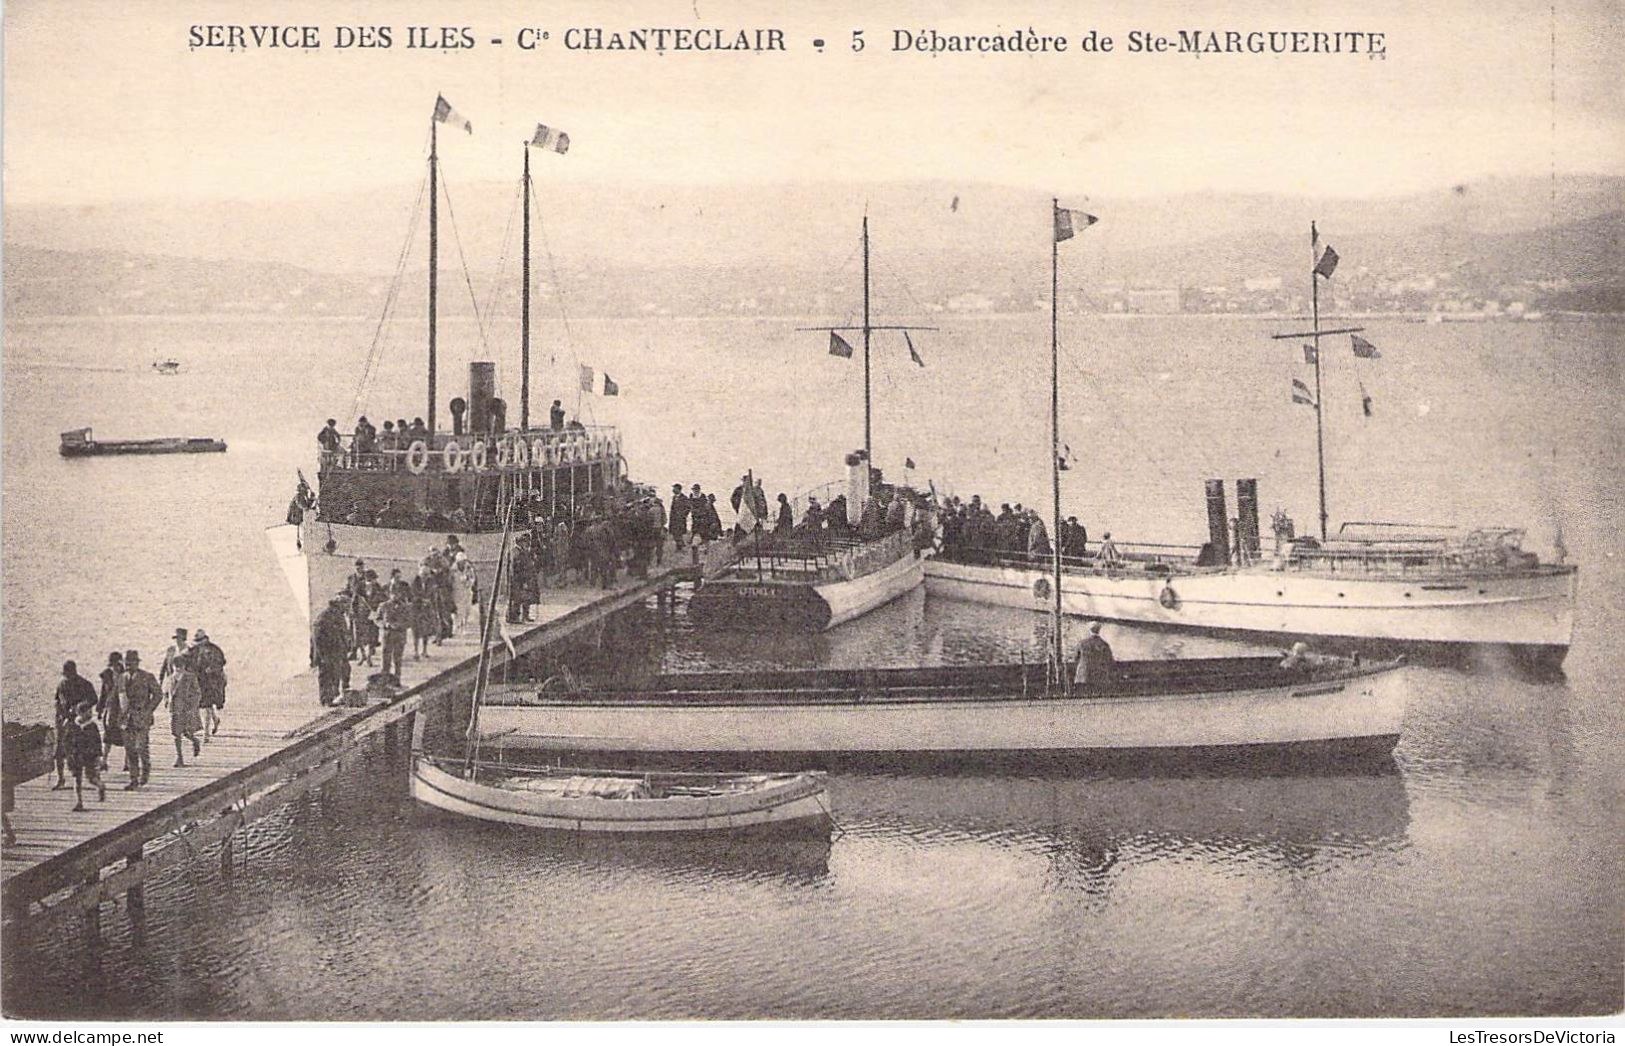 TRANSPORTS -  AEROGLISSEURS - Service Des Iles - Cie Chanteclair - Débarcadère Ste Marguerite - Carte Postale Ancienne - Hovercraft